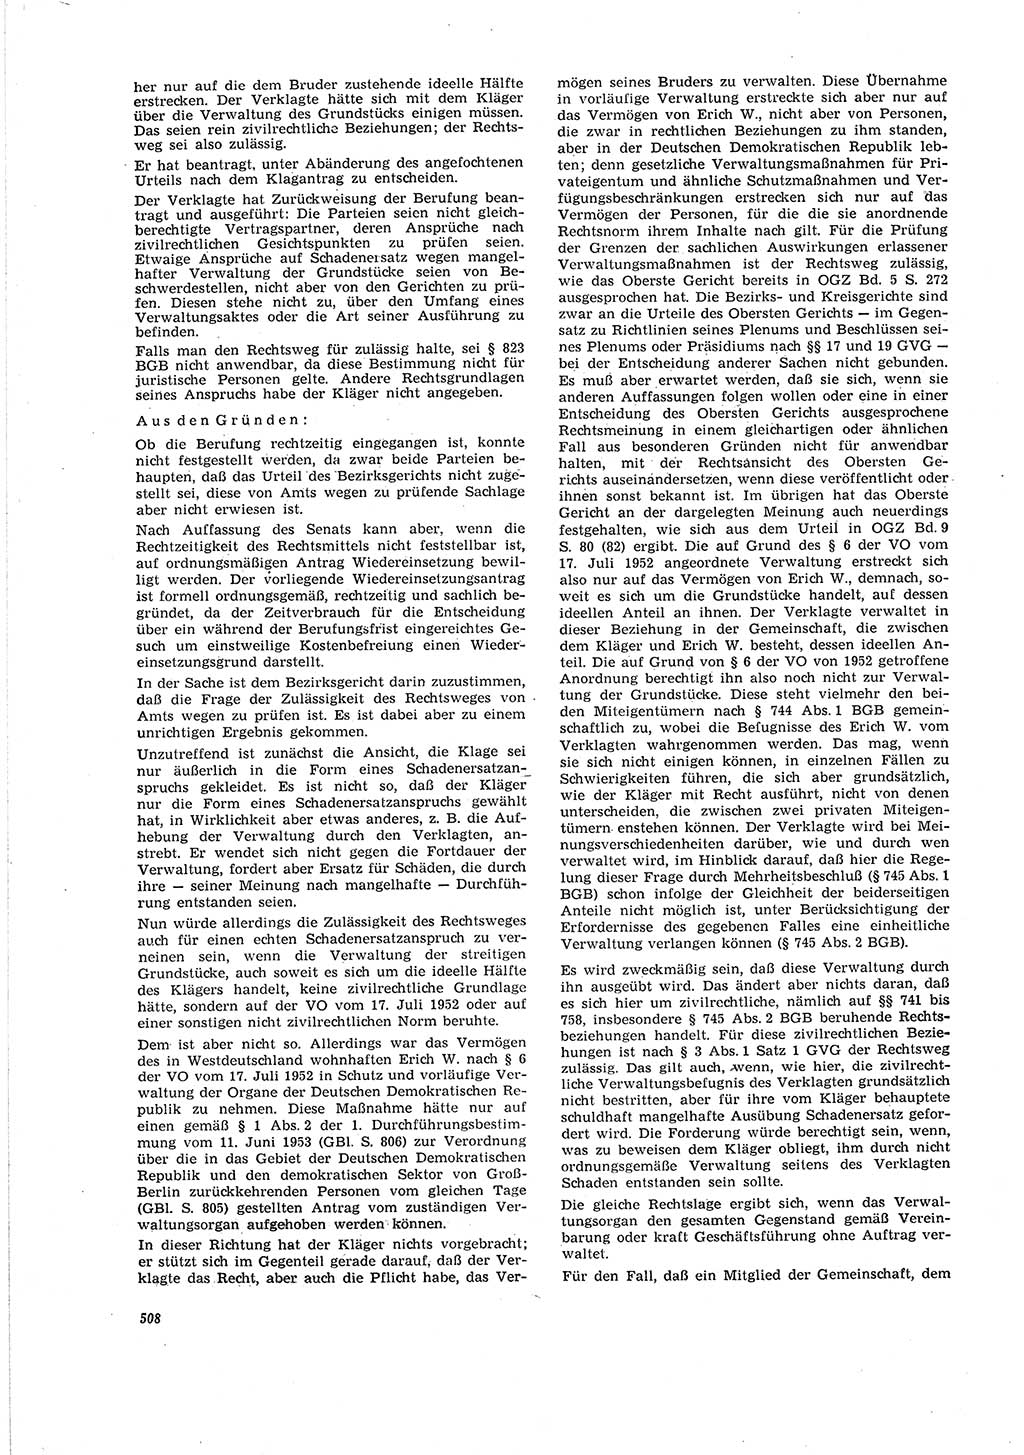 Neue Justiz (NJ), Zeitschrift für Recht und Rechtswissenschaft [Deutsche Demokratische Republik (DDR)], 20. Jahrgang 1966, Seite 508 (NJ DDR 1966, S. 508)